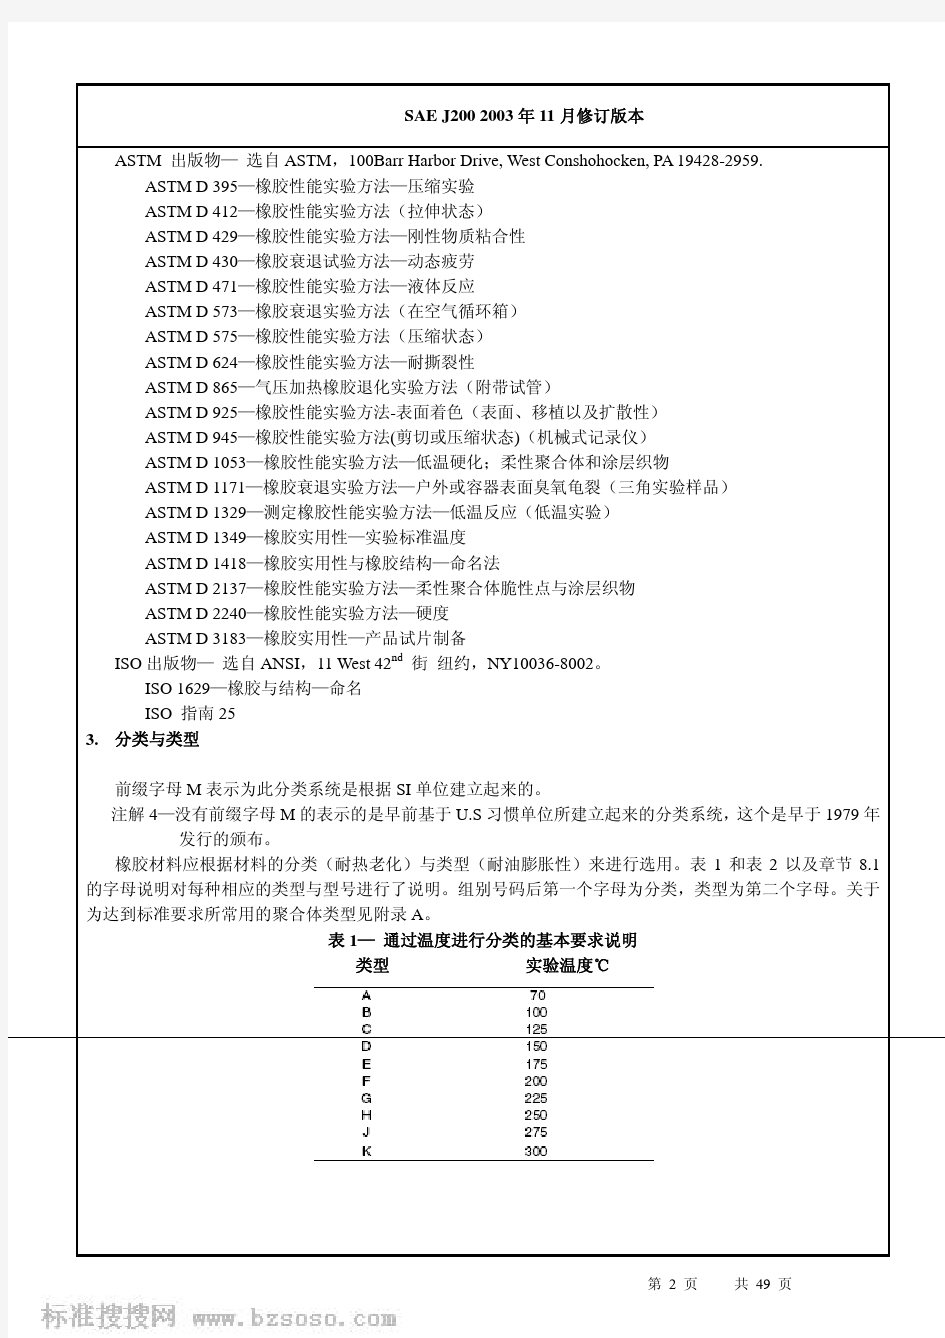 SAE_J200-2003(中文版)_橡胶材料分类体系标准